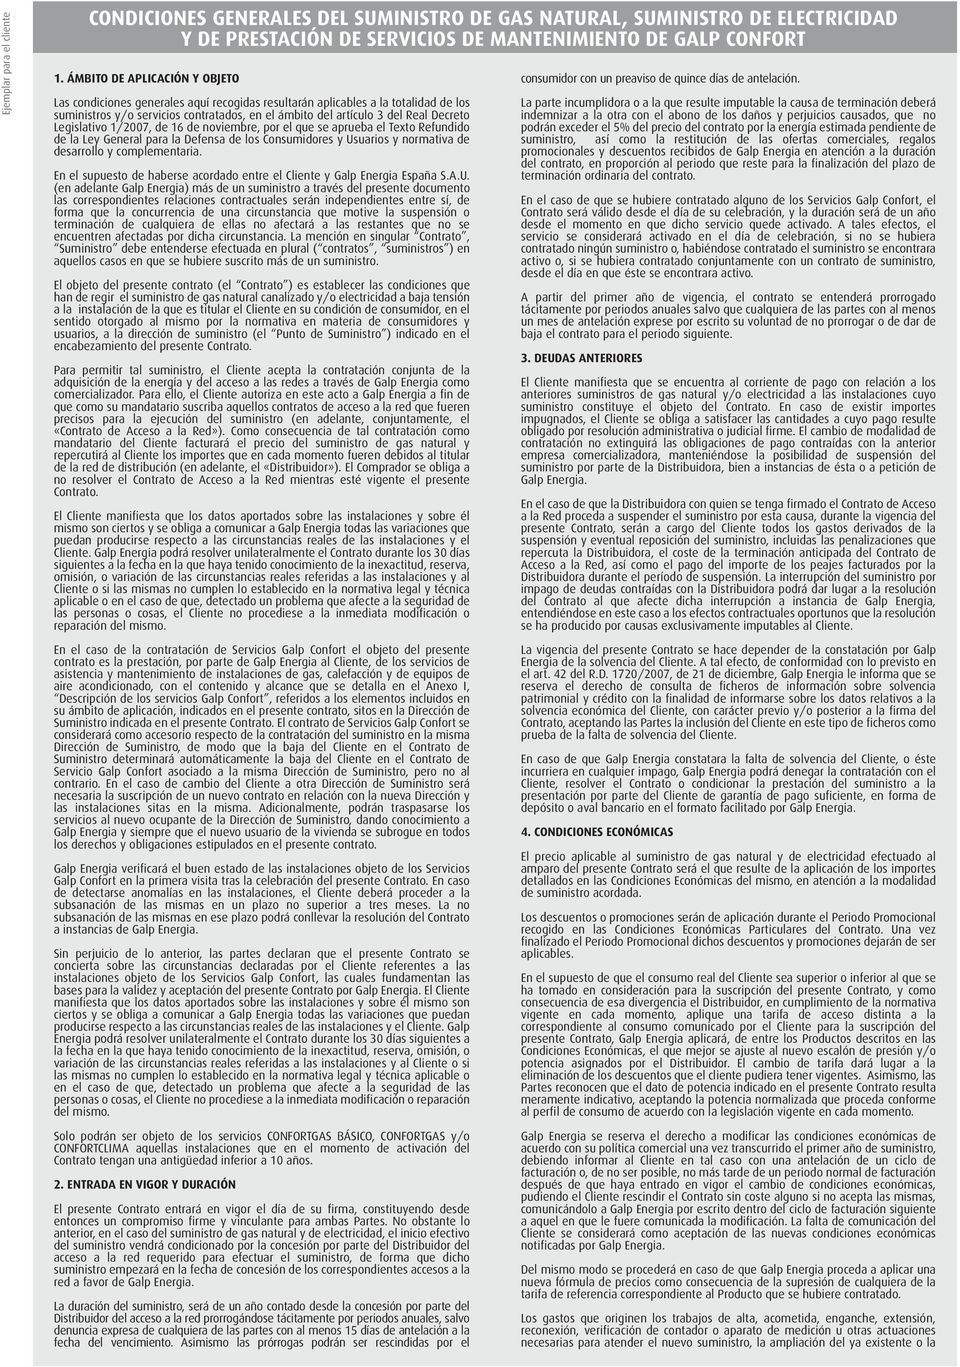 Legislativo 1/2007, de 16 de noviembre, por el que se aprueba el Texto Refundido de la Ley General para la Defensa de los Consumidores y Usuarios y normativa de desarrollo y complementaria.